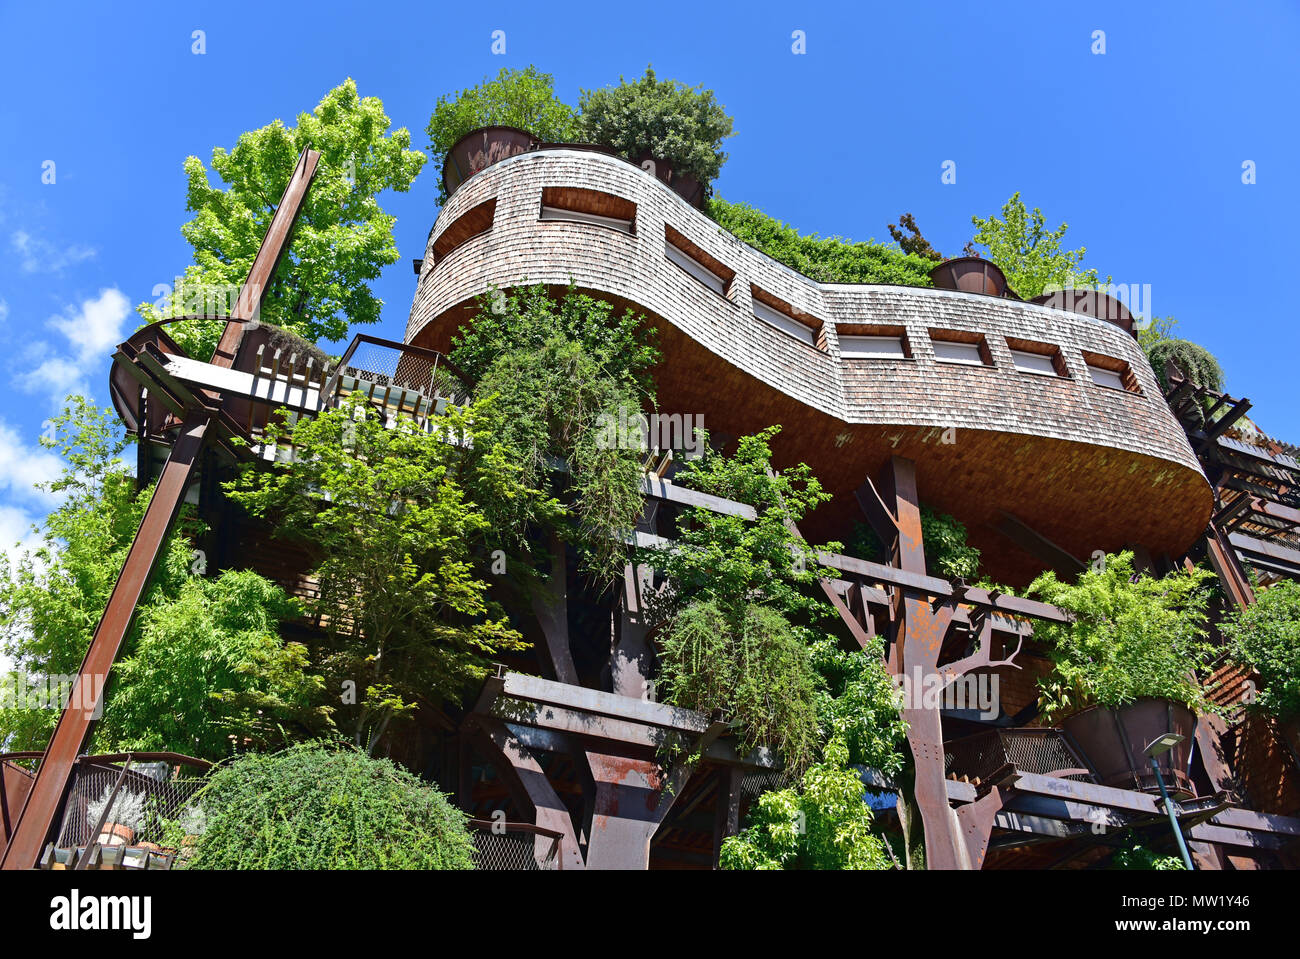 Condominio 25 Verde, eine umweltbewusste Condo-gebäude (urban Treehouse) in Bäumen und Pflanzen bedeckt, von Luciano Pia, Turin, Italien Stockfoto